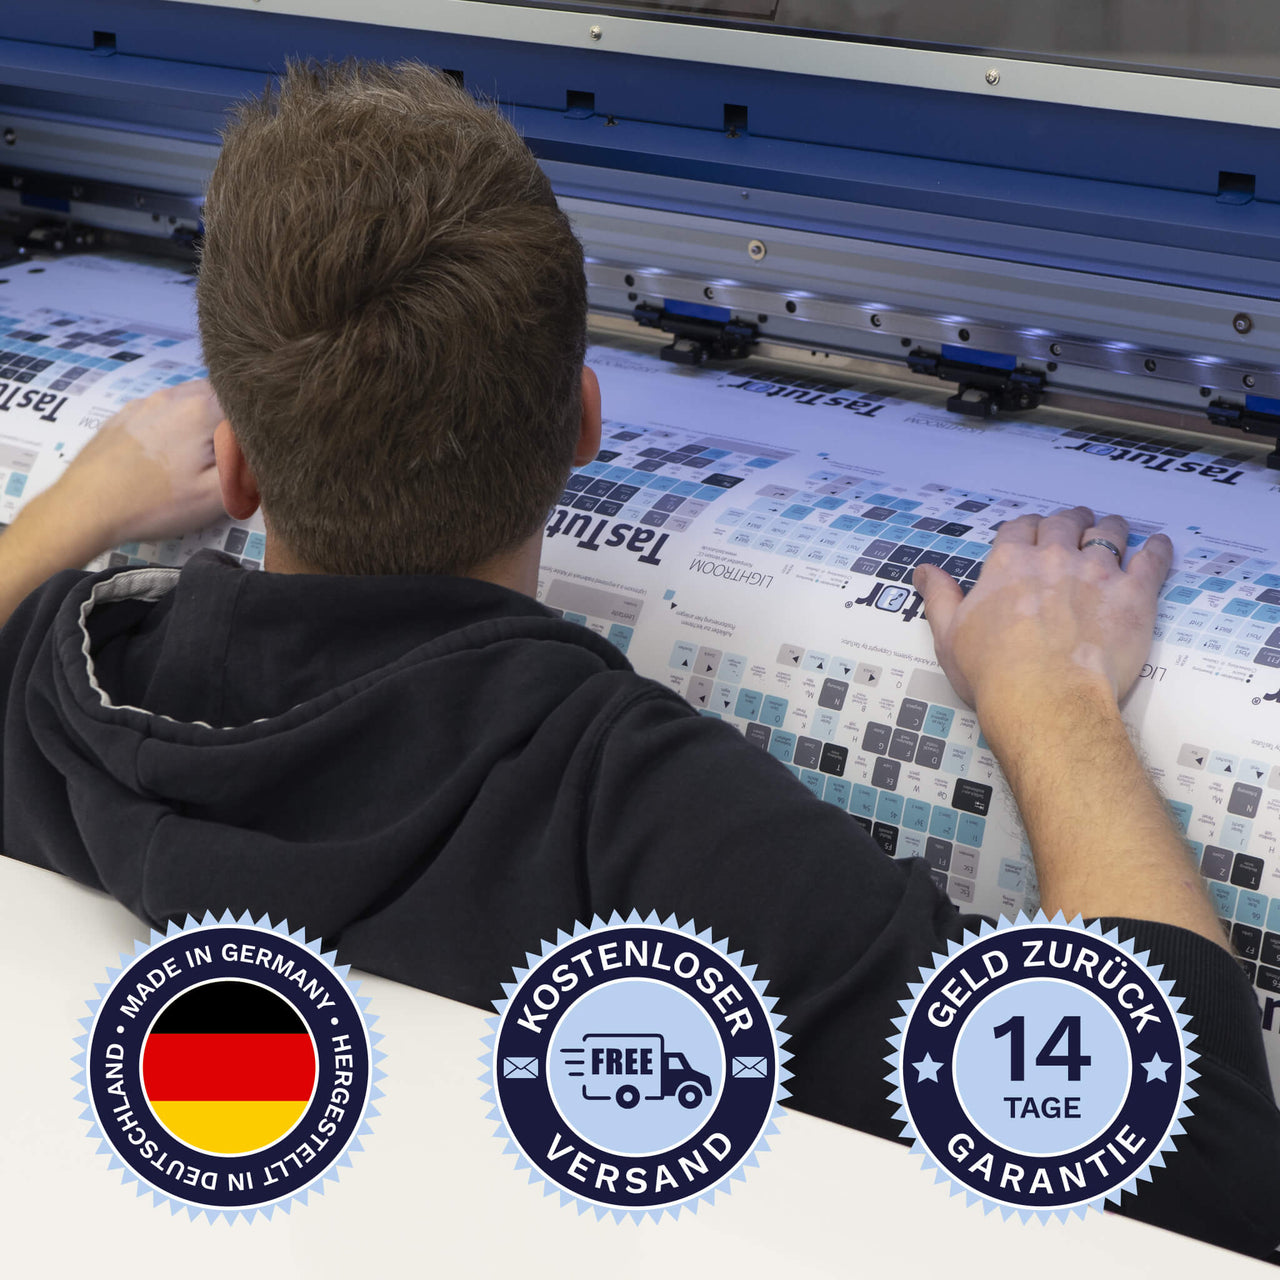 Fortnite Tastaturaufkleber werden in Deutschland hergestellt. Der Versand ist kostenlos und wir gewährleisten 14 Tage Geld zurück Garantie | TasTutor